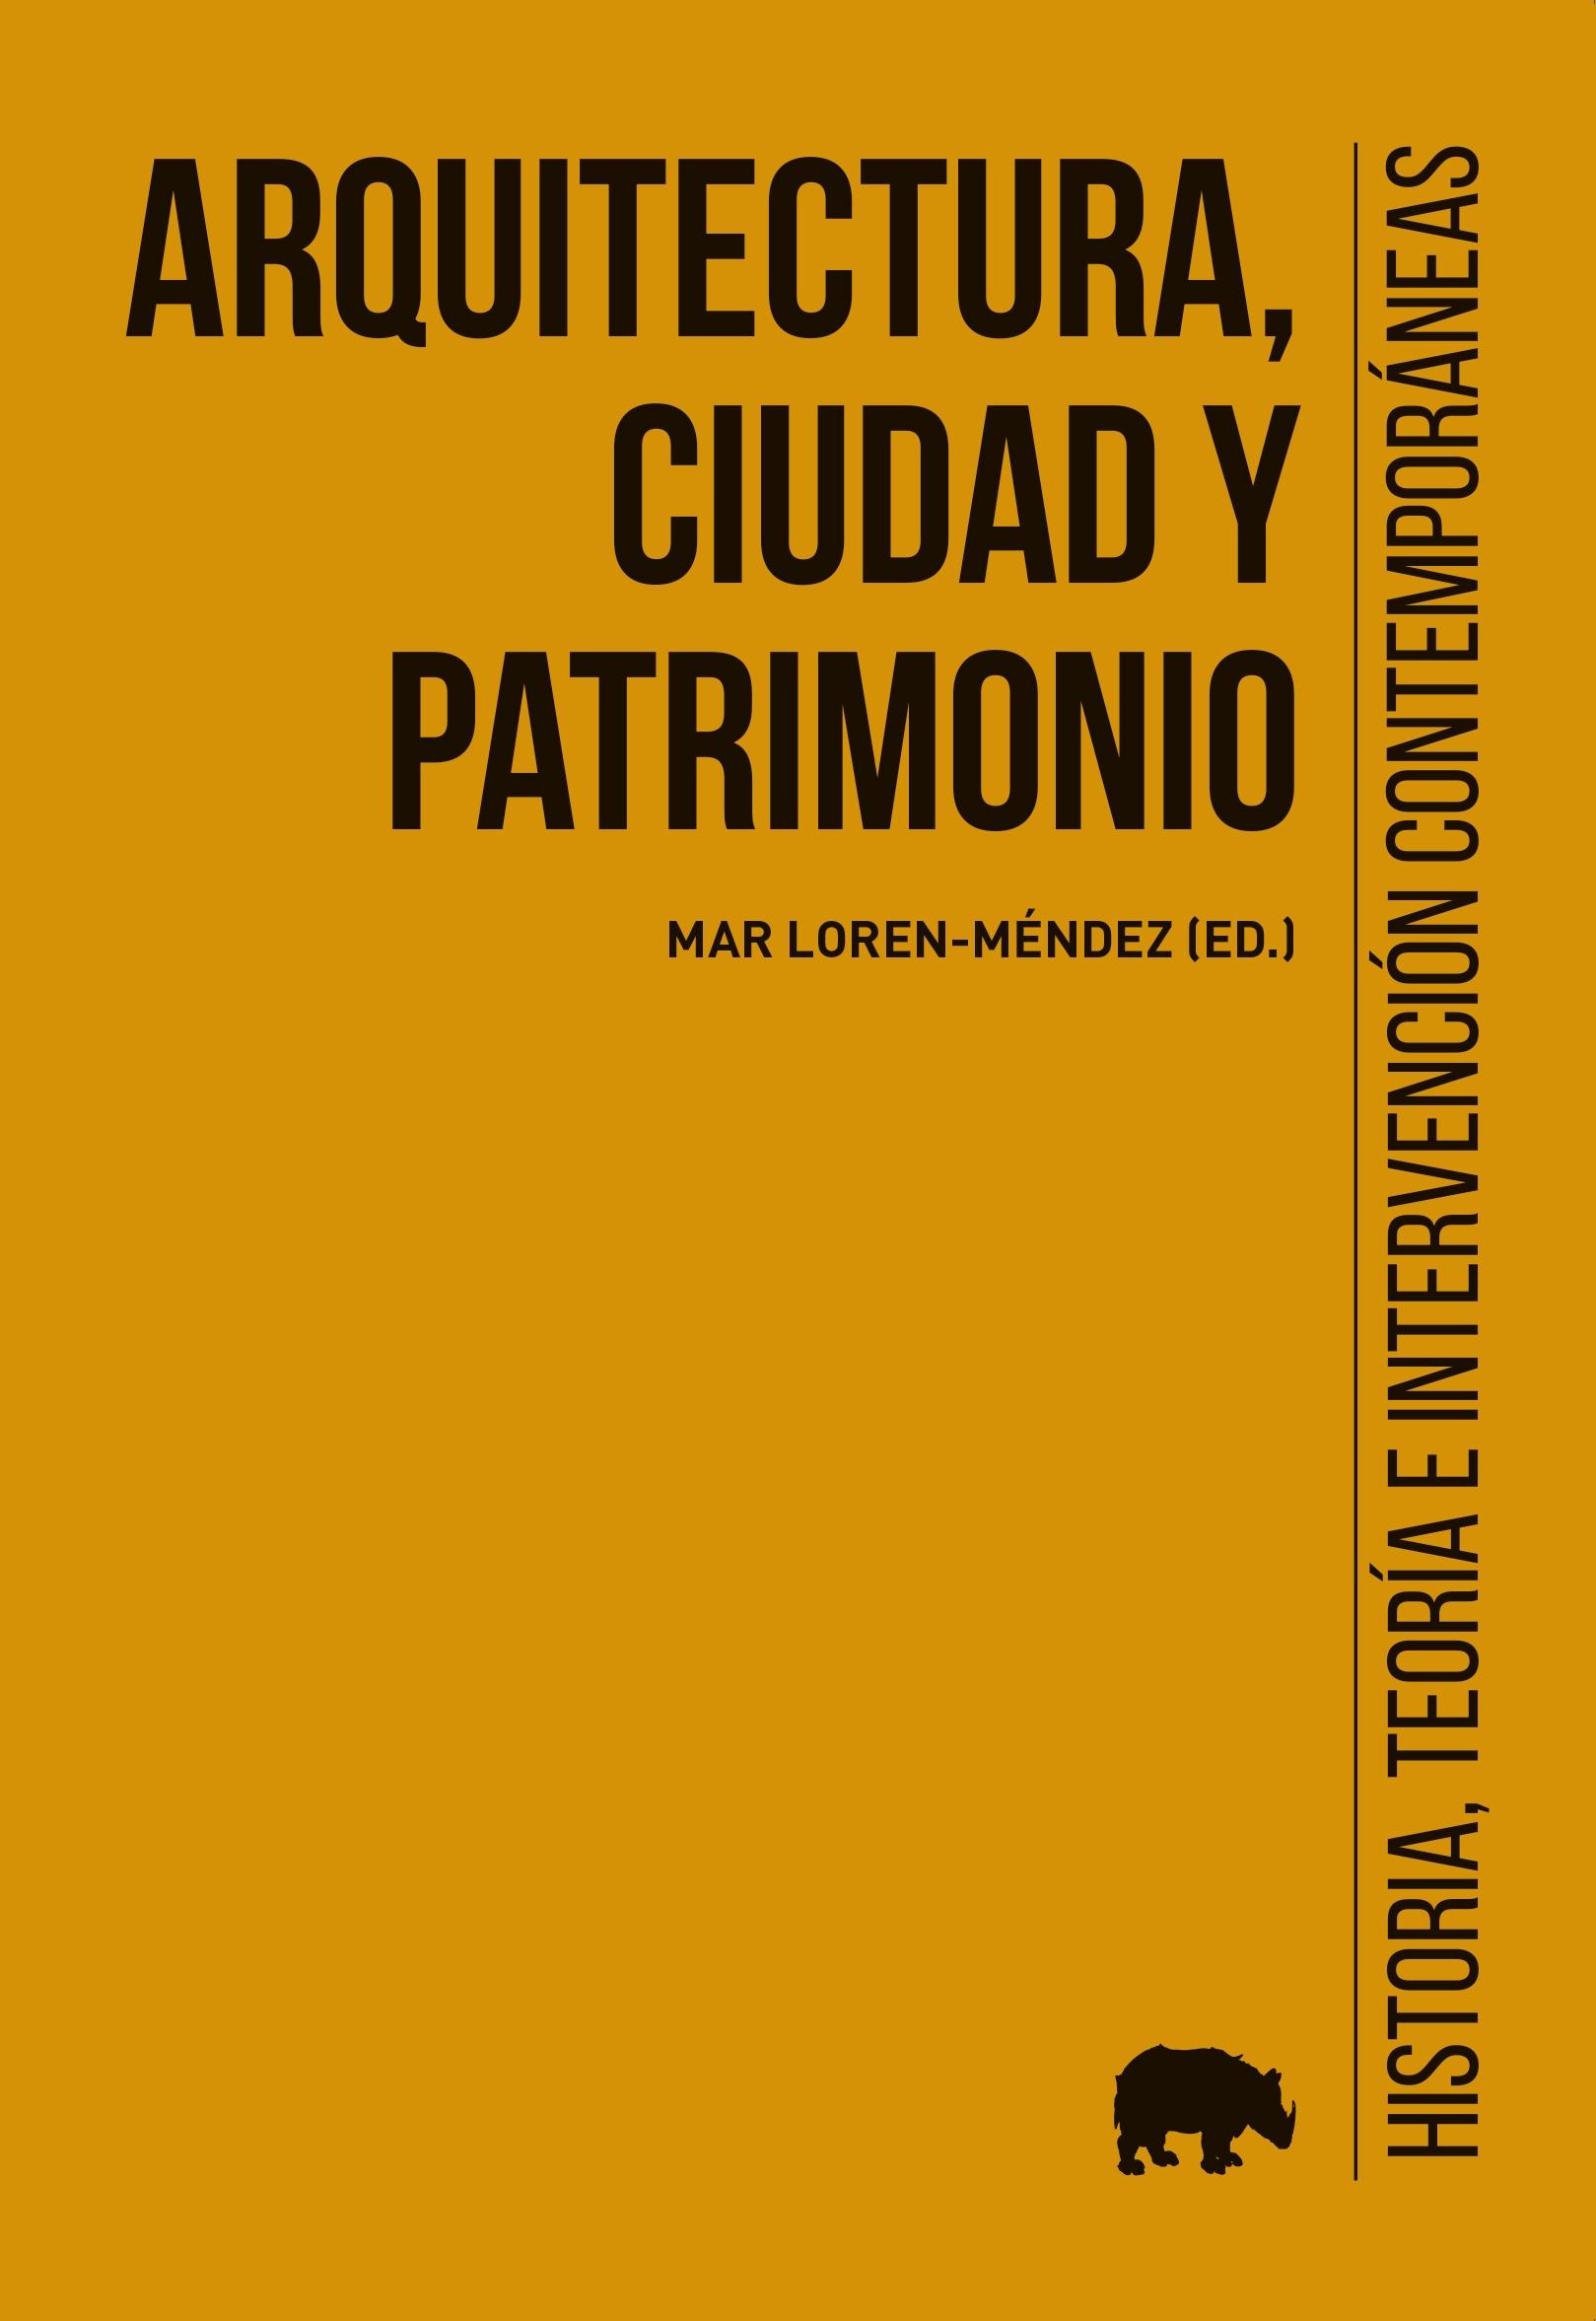 ARQUITECTURA, CIUDAD Y PATRIMONIO "HISTORIA, TEORÍA E INTERVENCION CONTEMPORANEAS"